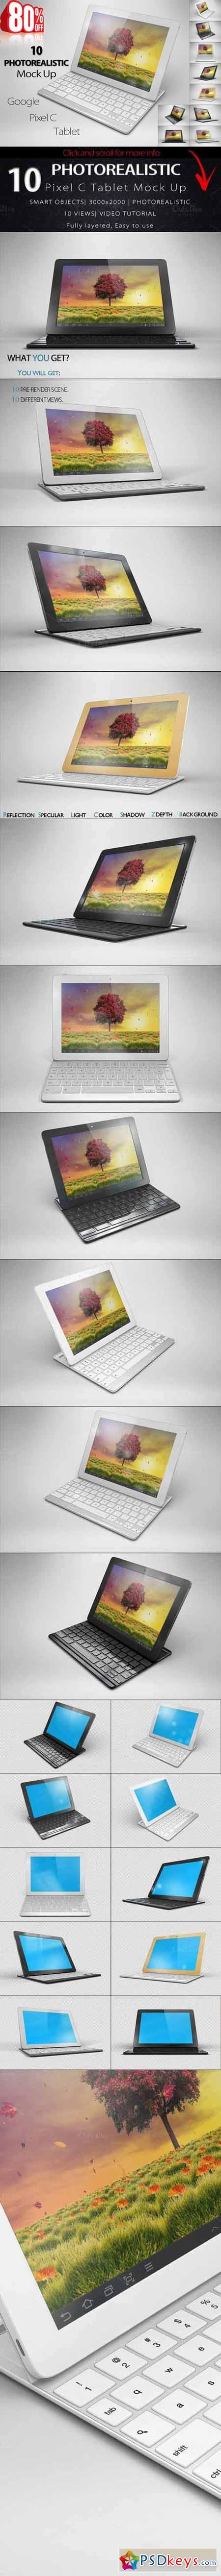 BUNDLE Google Pixel C Tablet Mock Up 437322